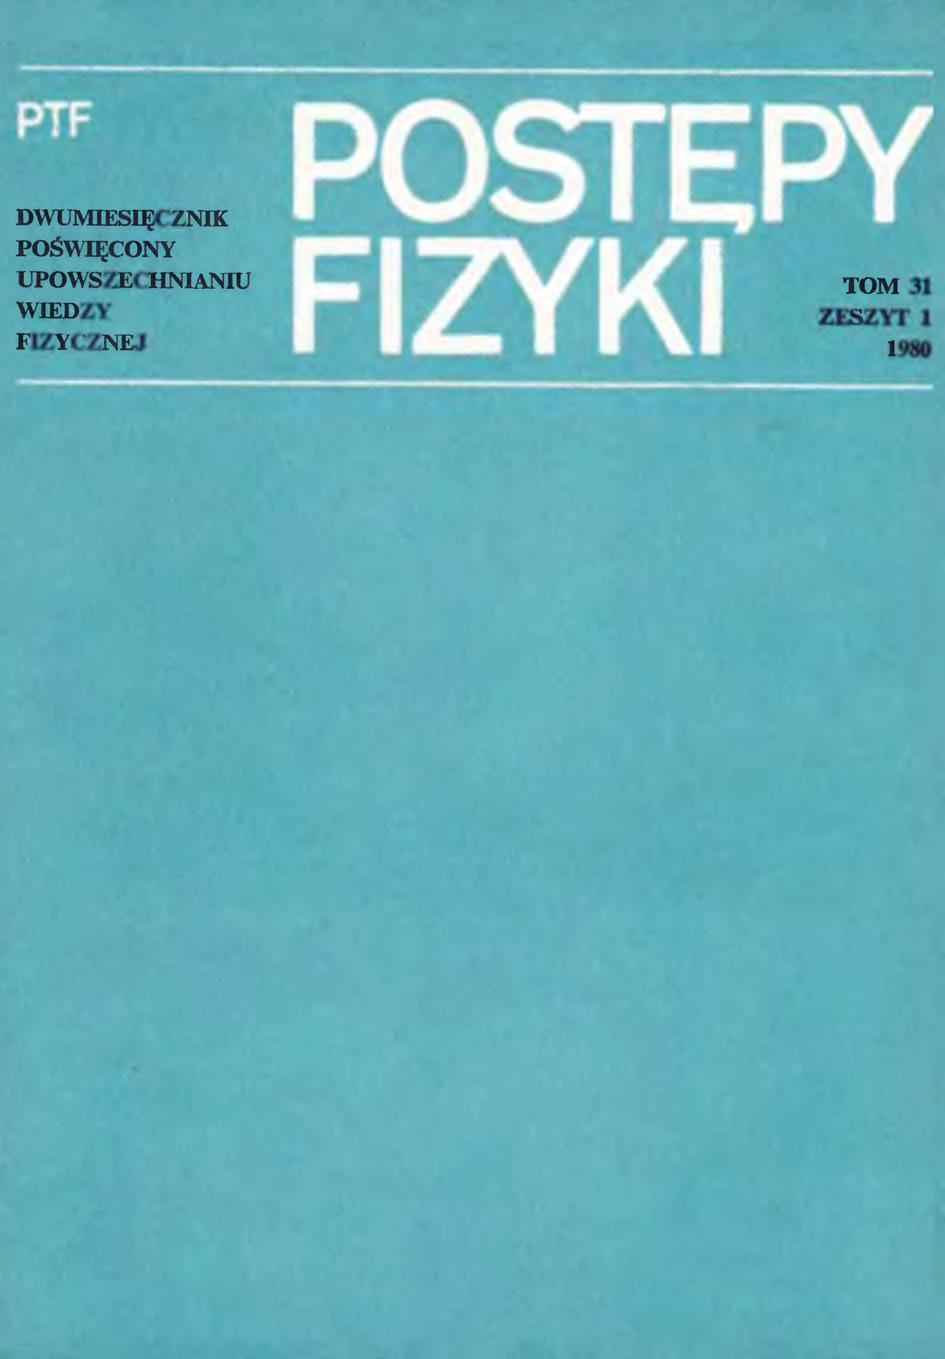 Postępy Fizyki 31 (1) 1980